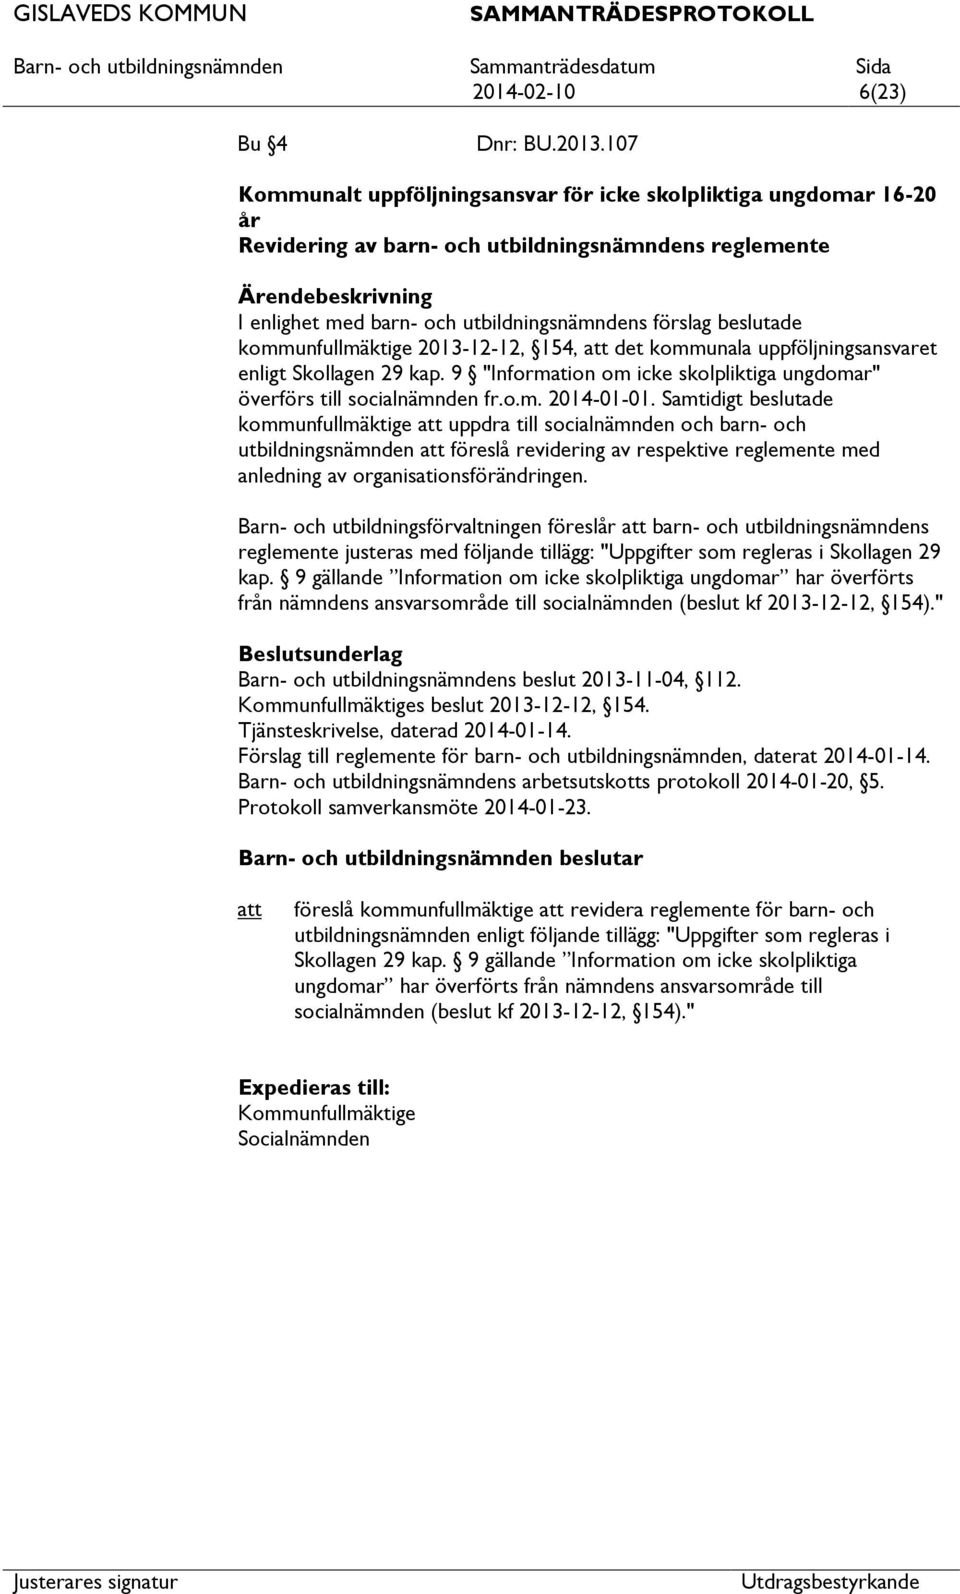 kommunfullmäktige 2013-12-12, 154, det kommunala uppföljningsansvaret enligt Skollagen 29 kap. 9 "Information om icke skolpliktiga ungdomar" överförs till socialnämnden fr.o.m. 2014-01-01.